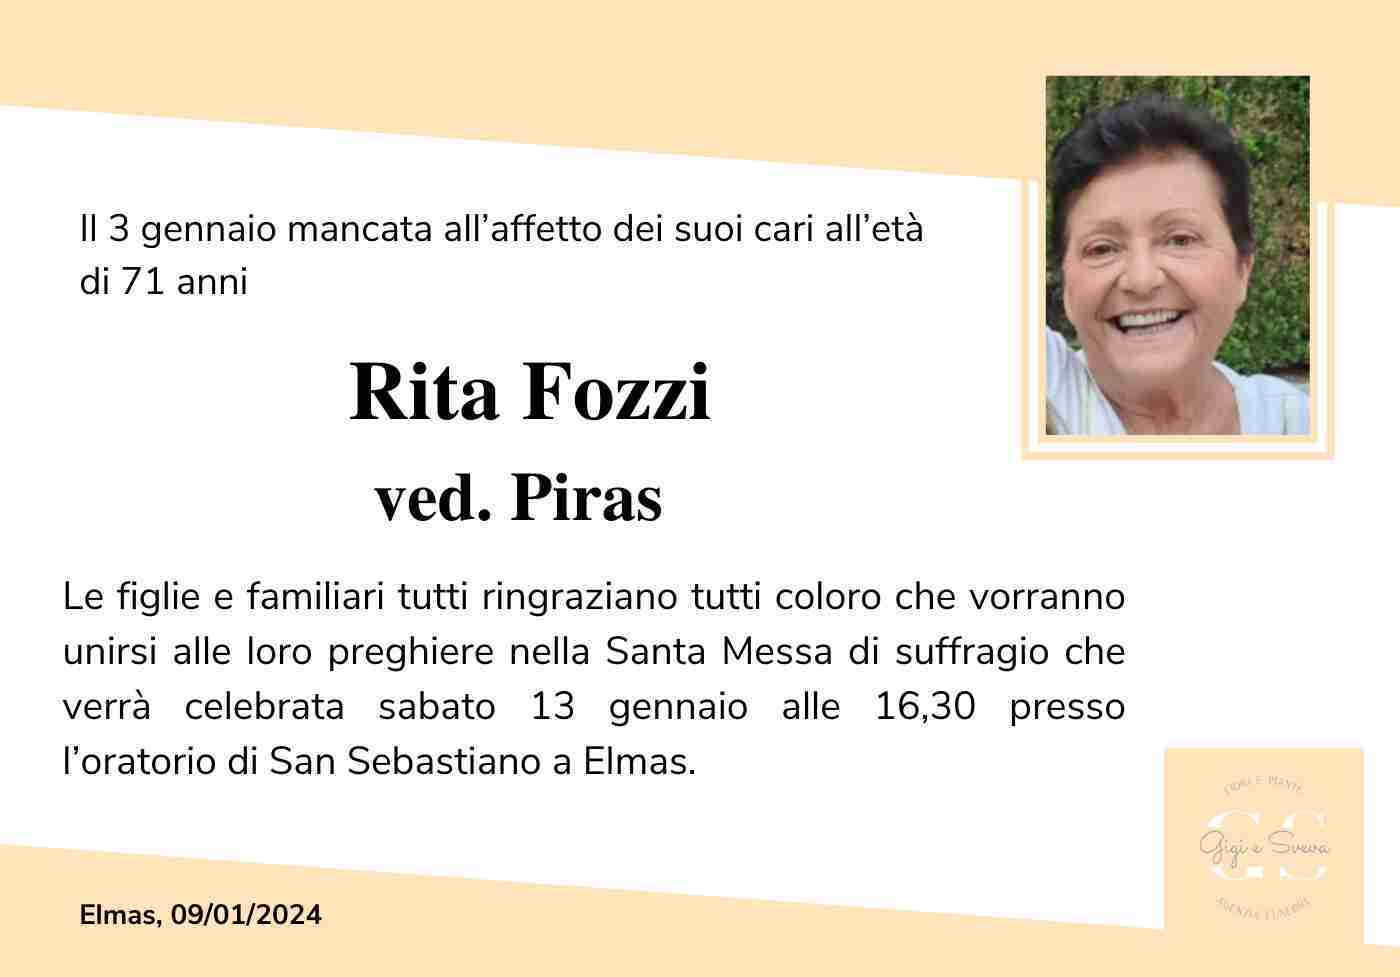 Rita Fozzi